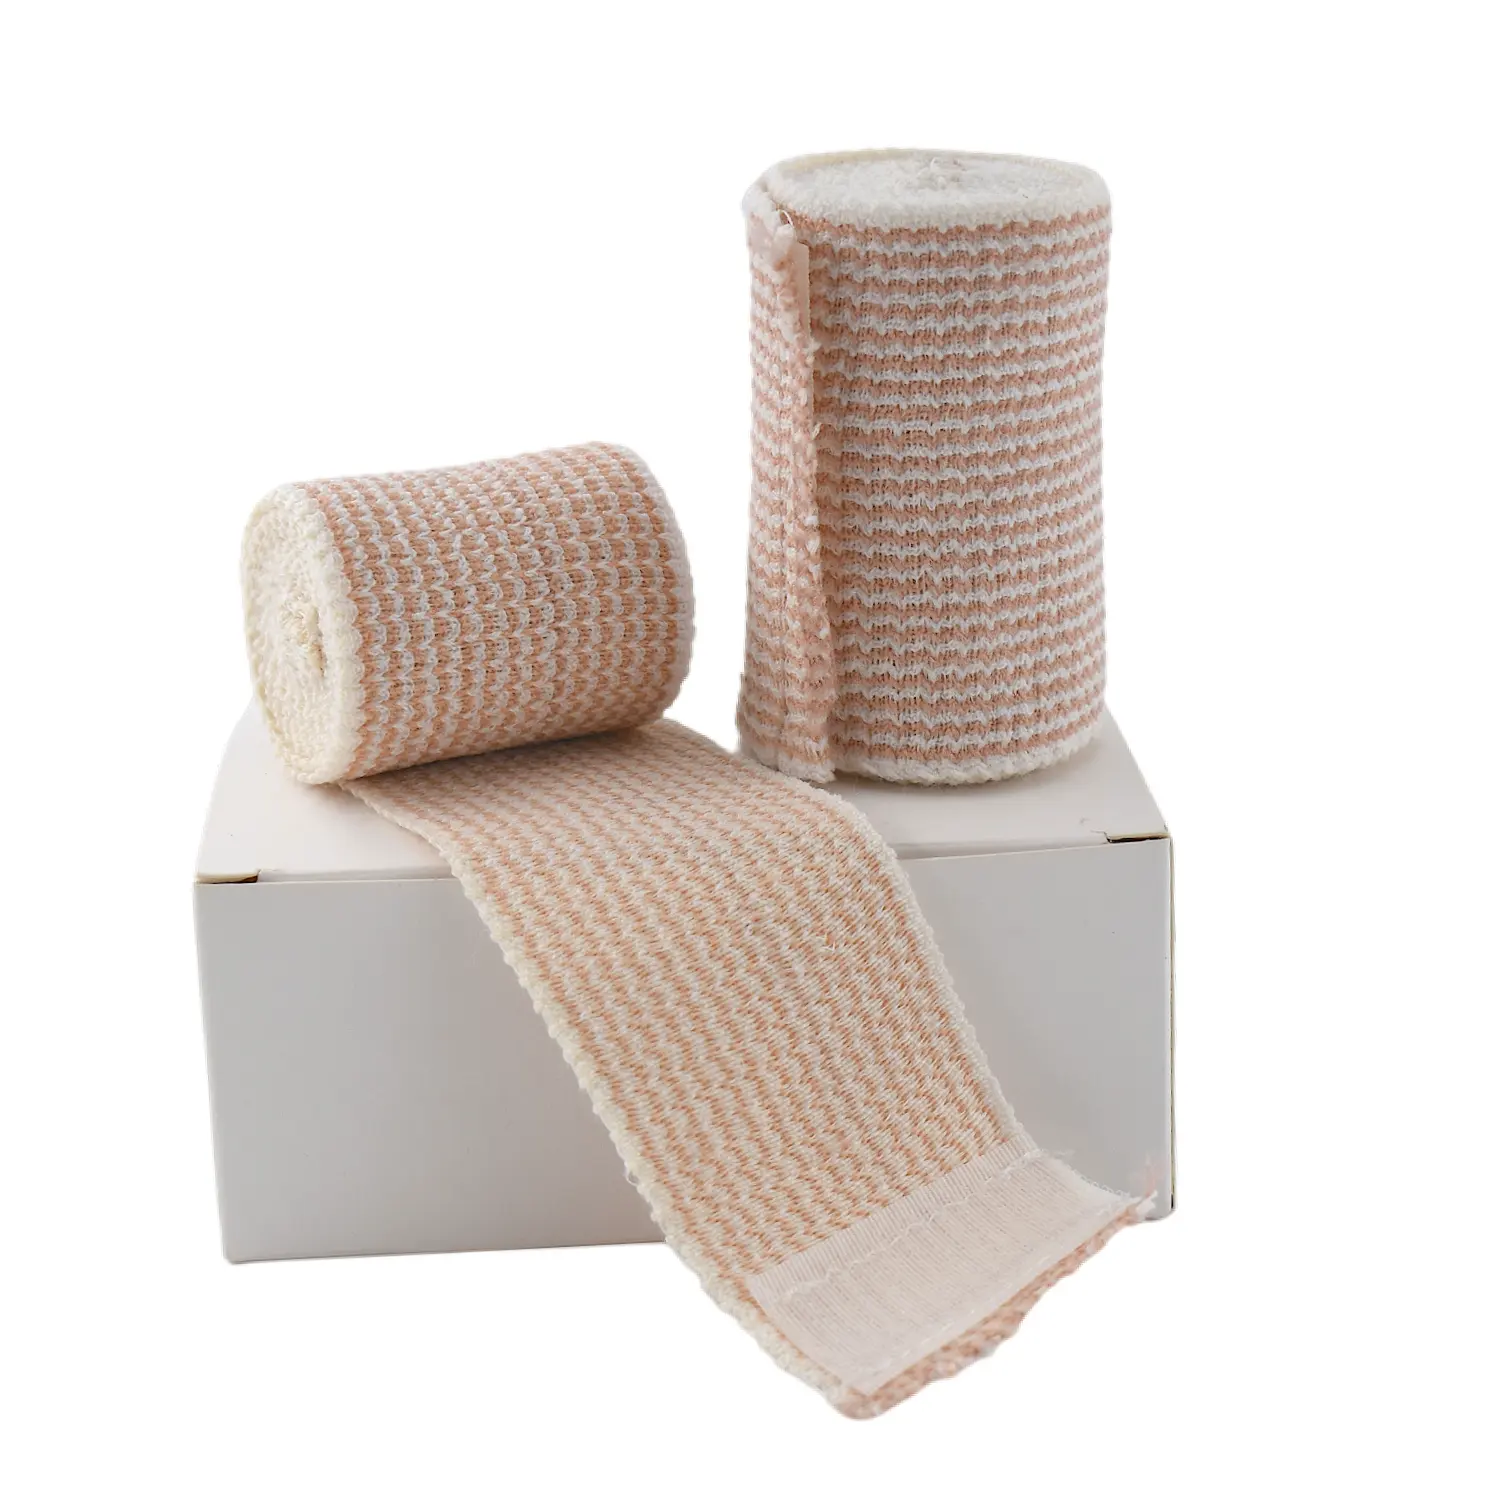 Rouleau de Bandage en coton élastique, nouveau, hypoallergénique de Sport, de taille OEM, bande en nid d'abeille, pour pansement de joues